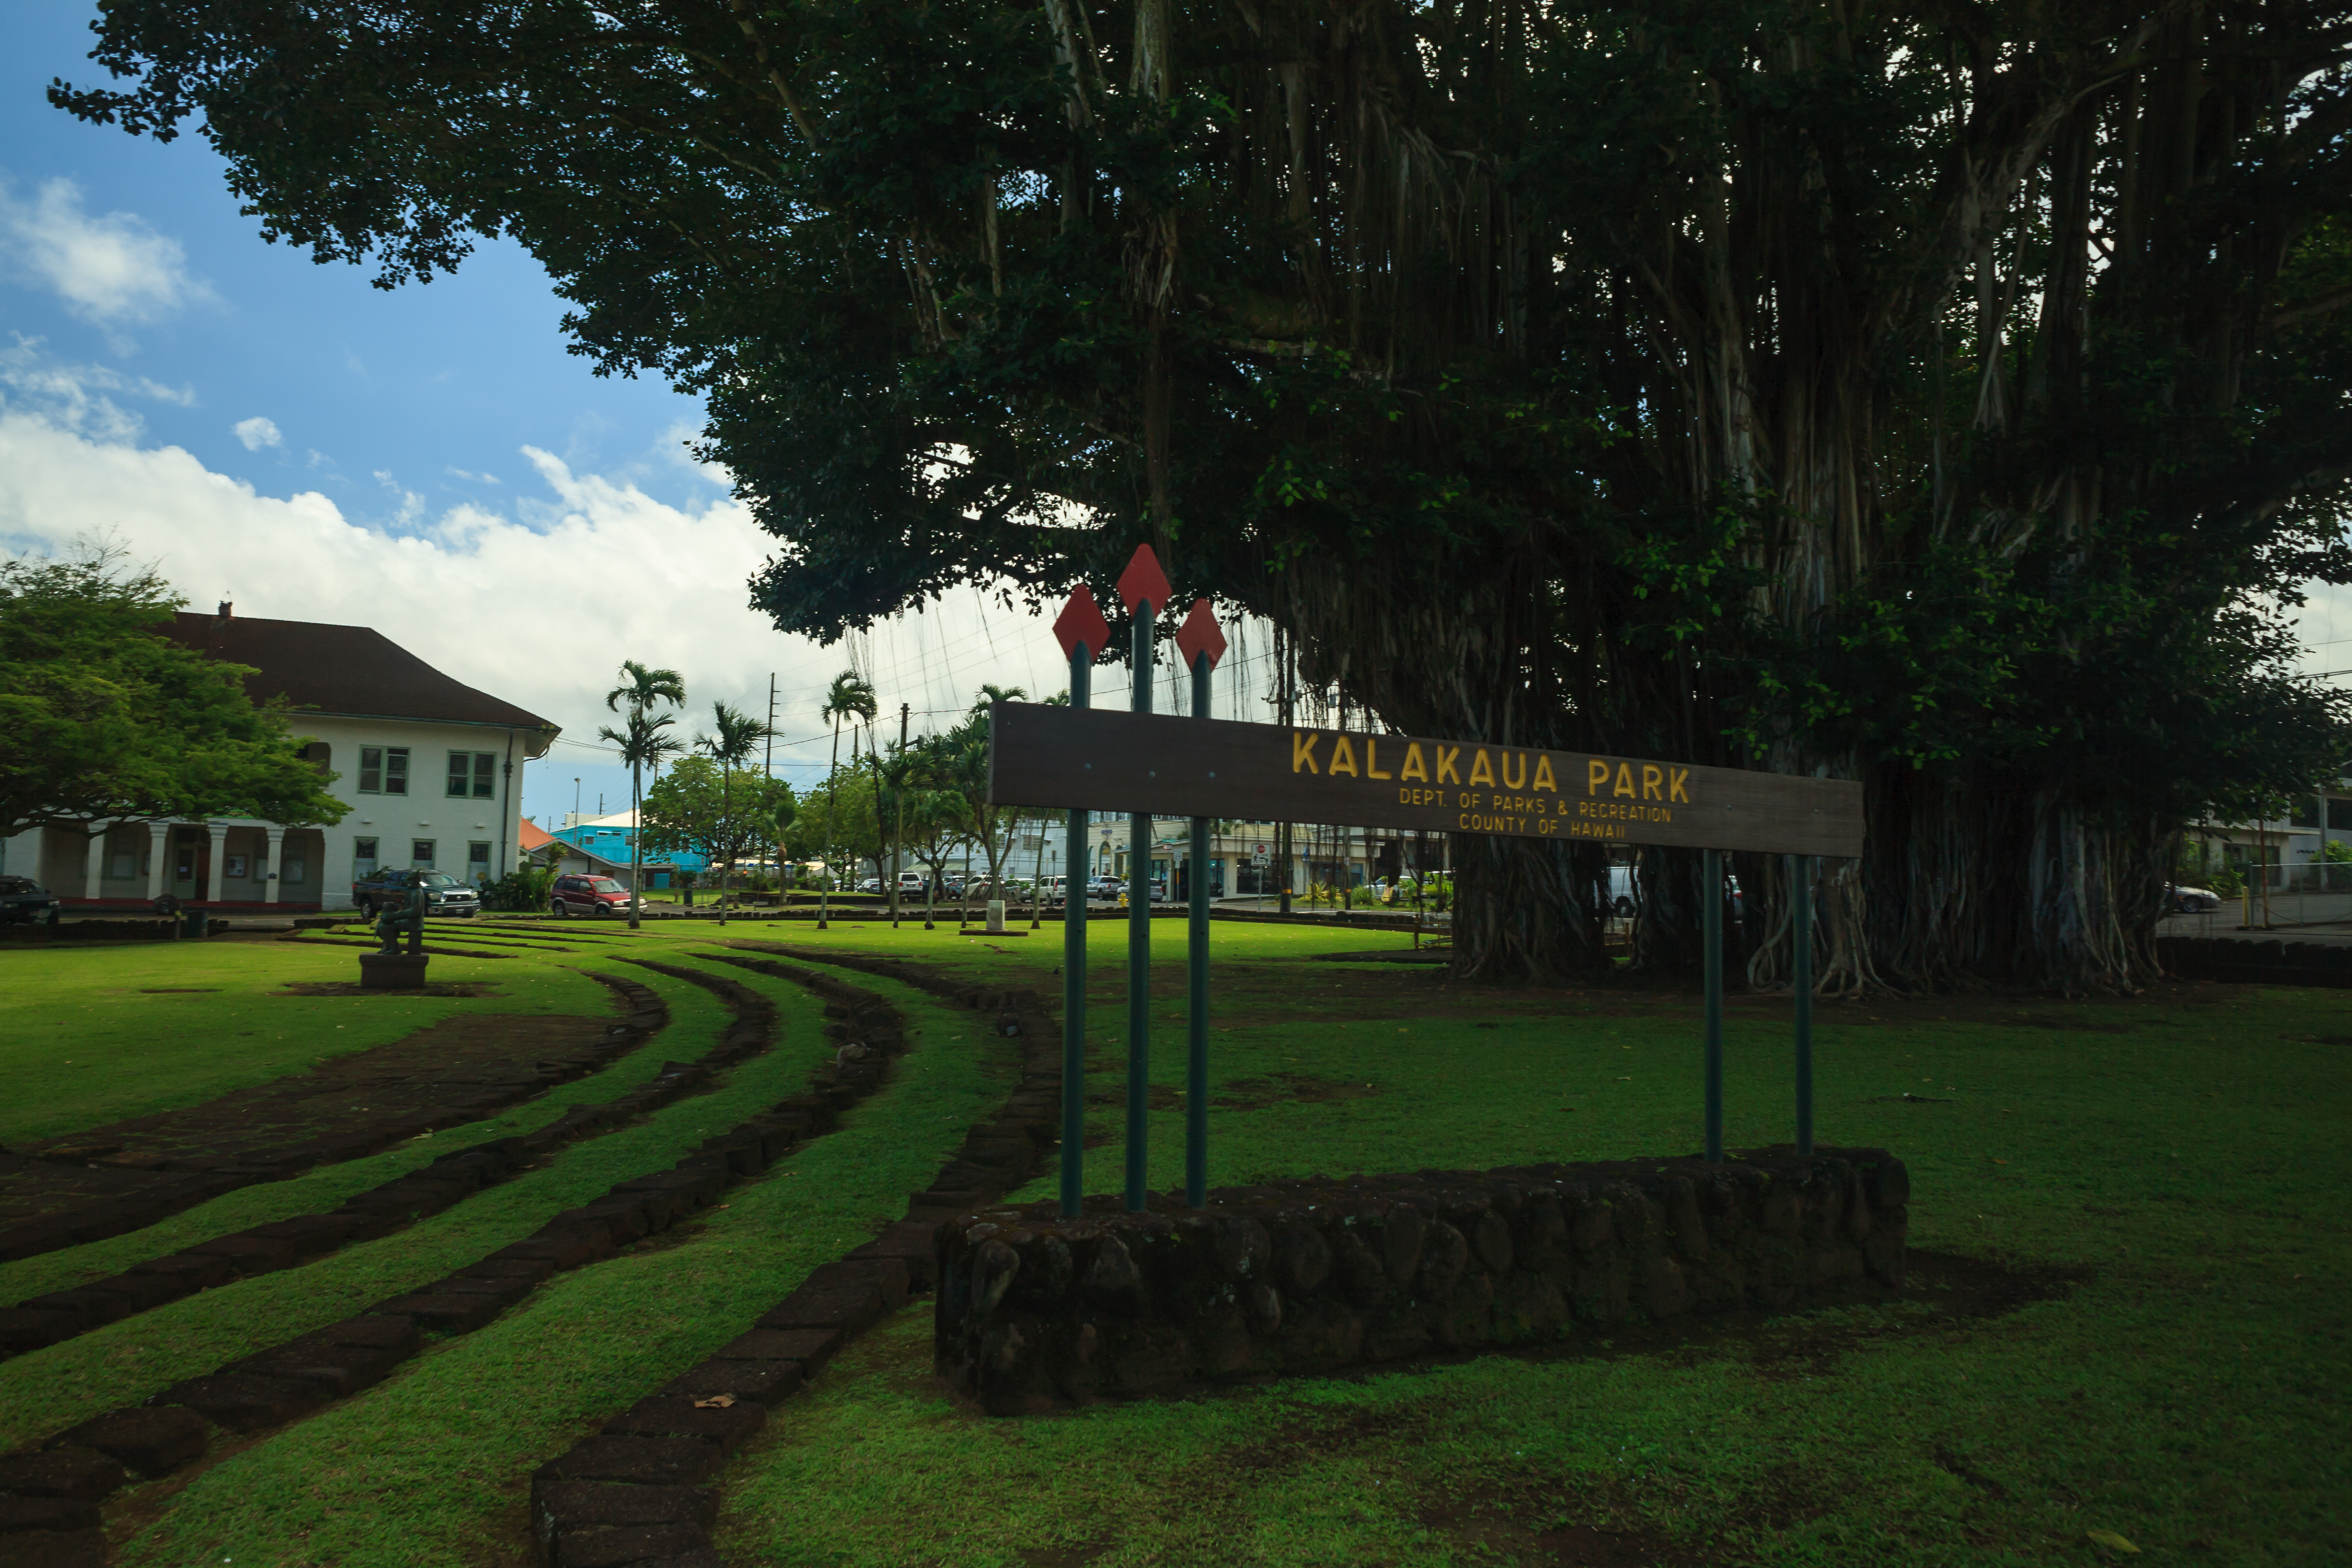 Kalakaua Park